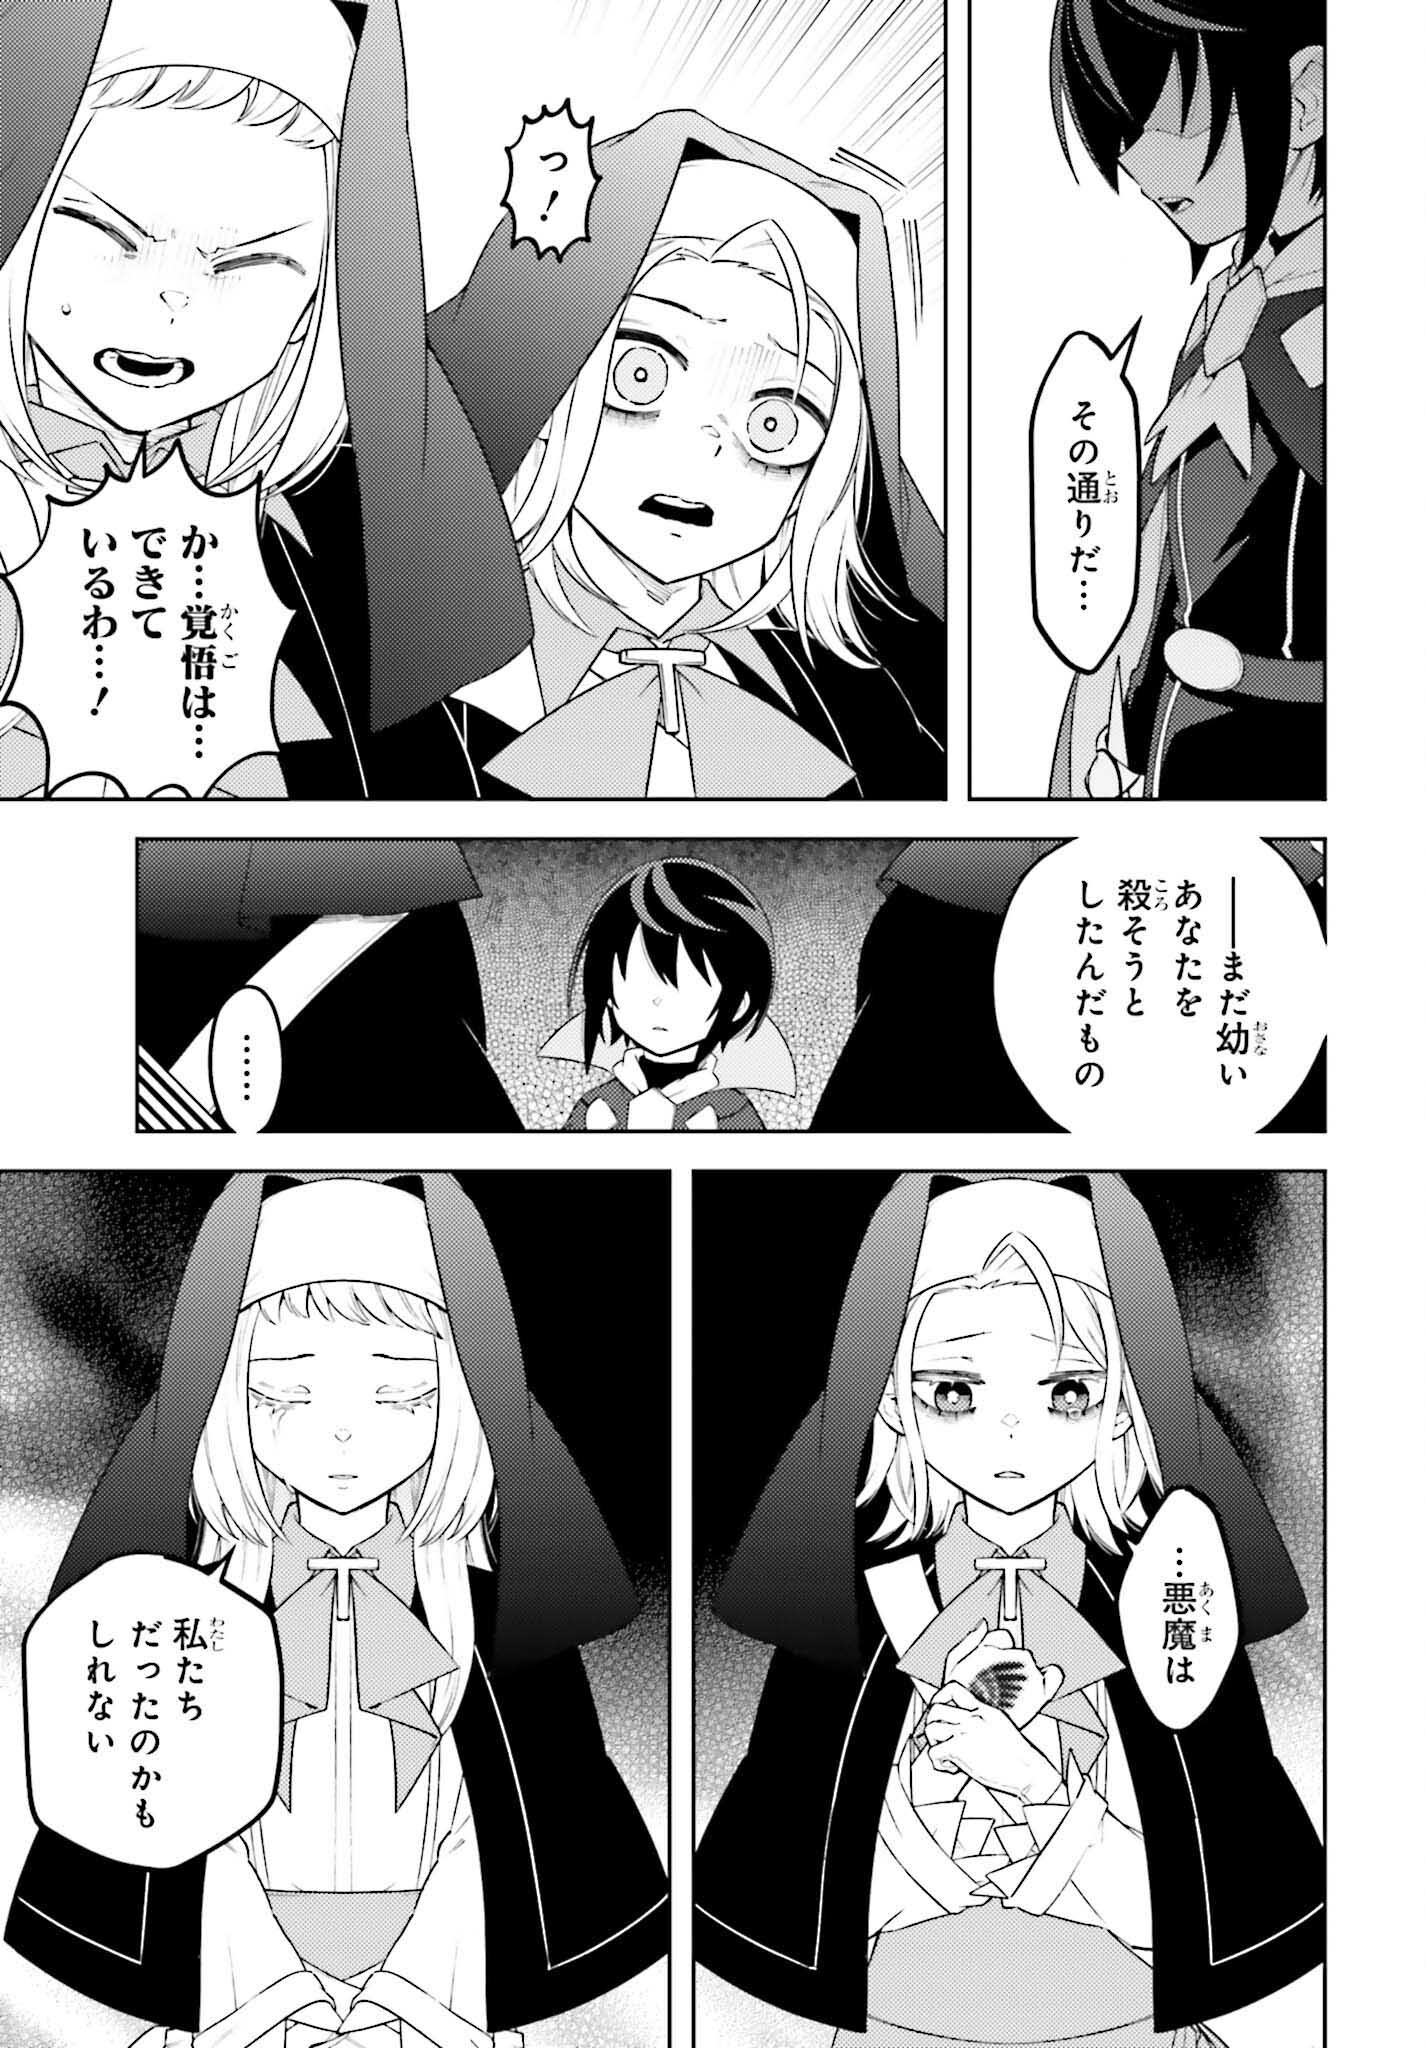 Kiraware Ouji no Yarinaoshi - Chapter 13 - Page 29